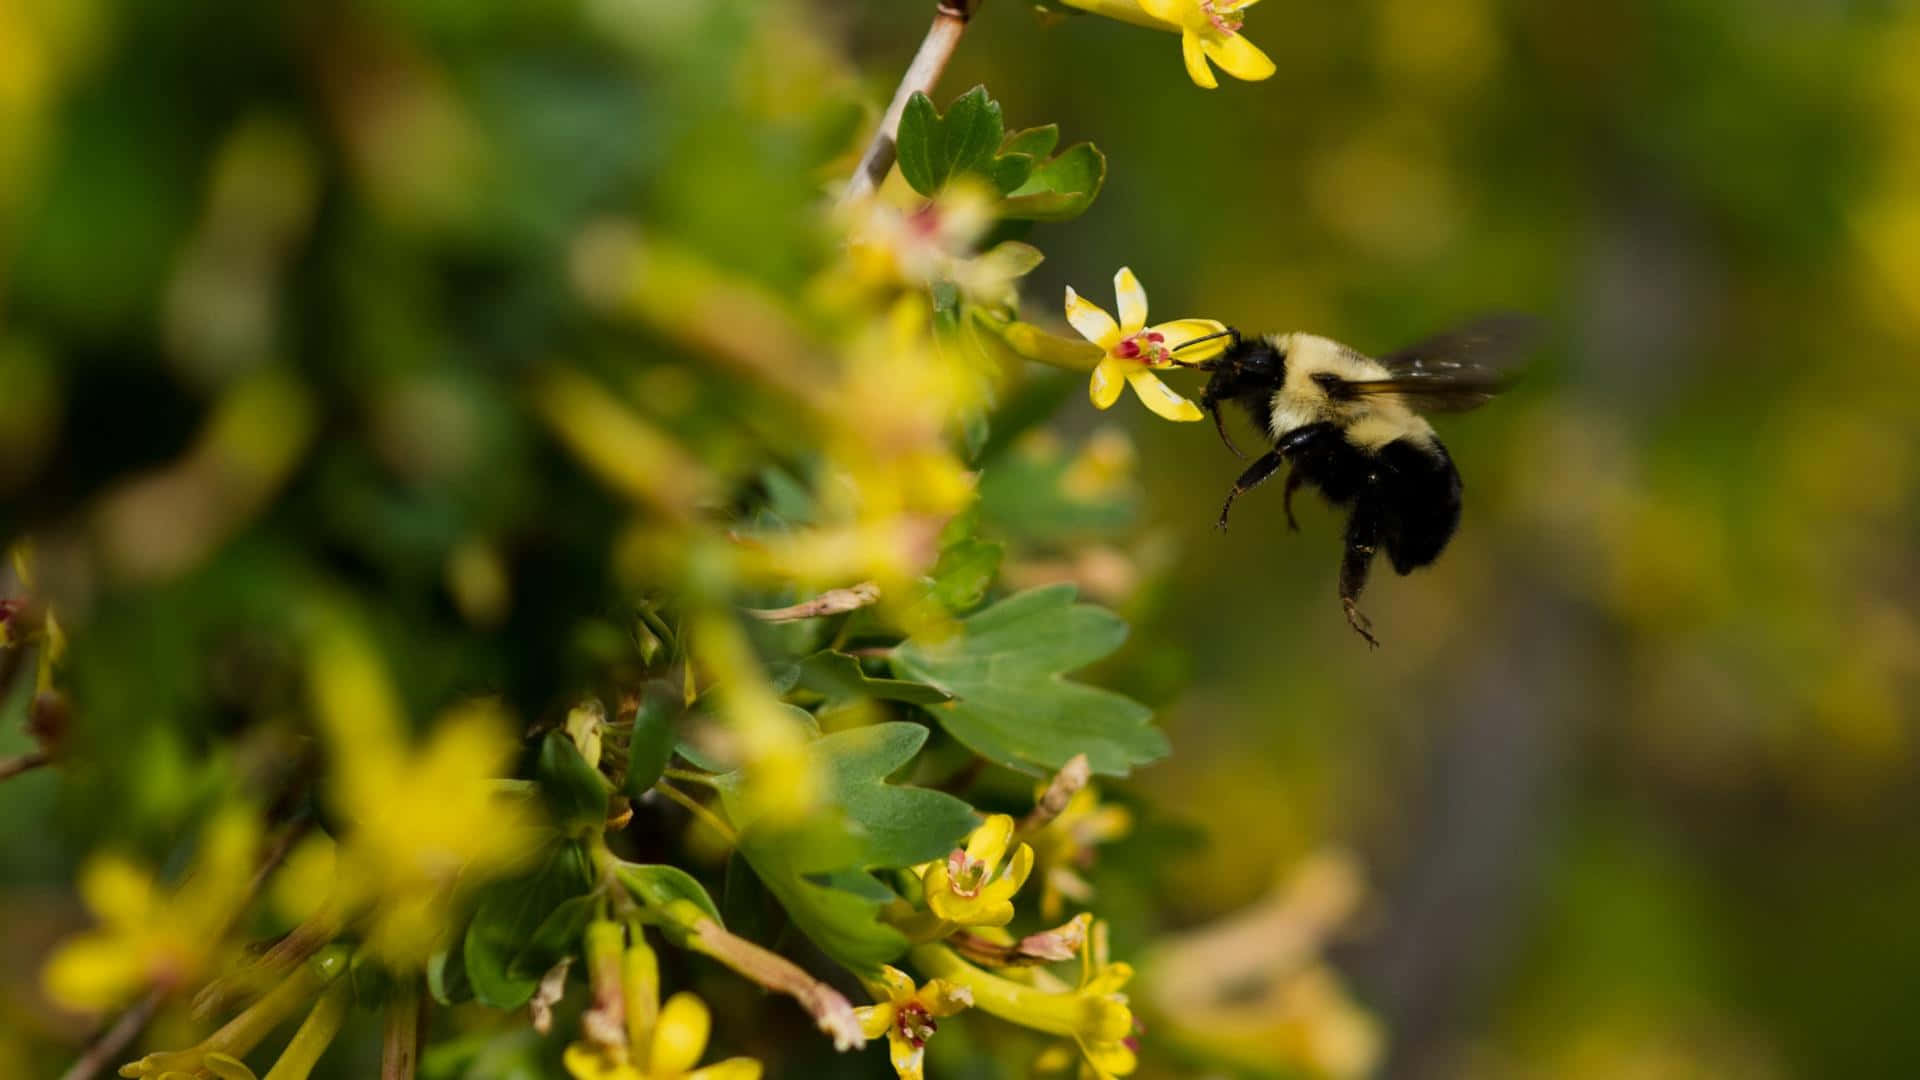 Bumblebee Pollinationin Action.jpg Wallpaper